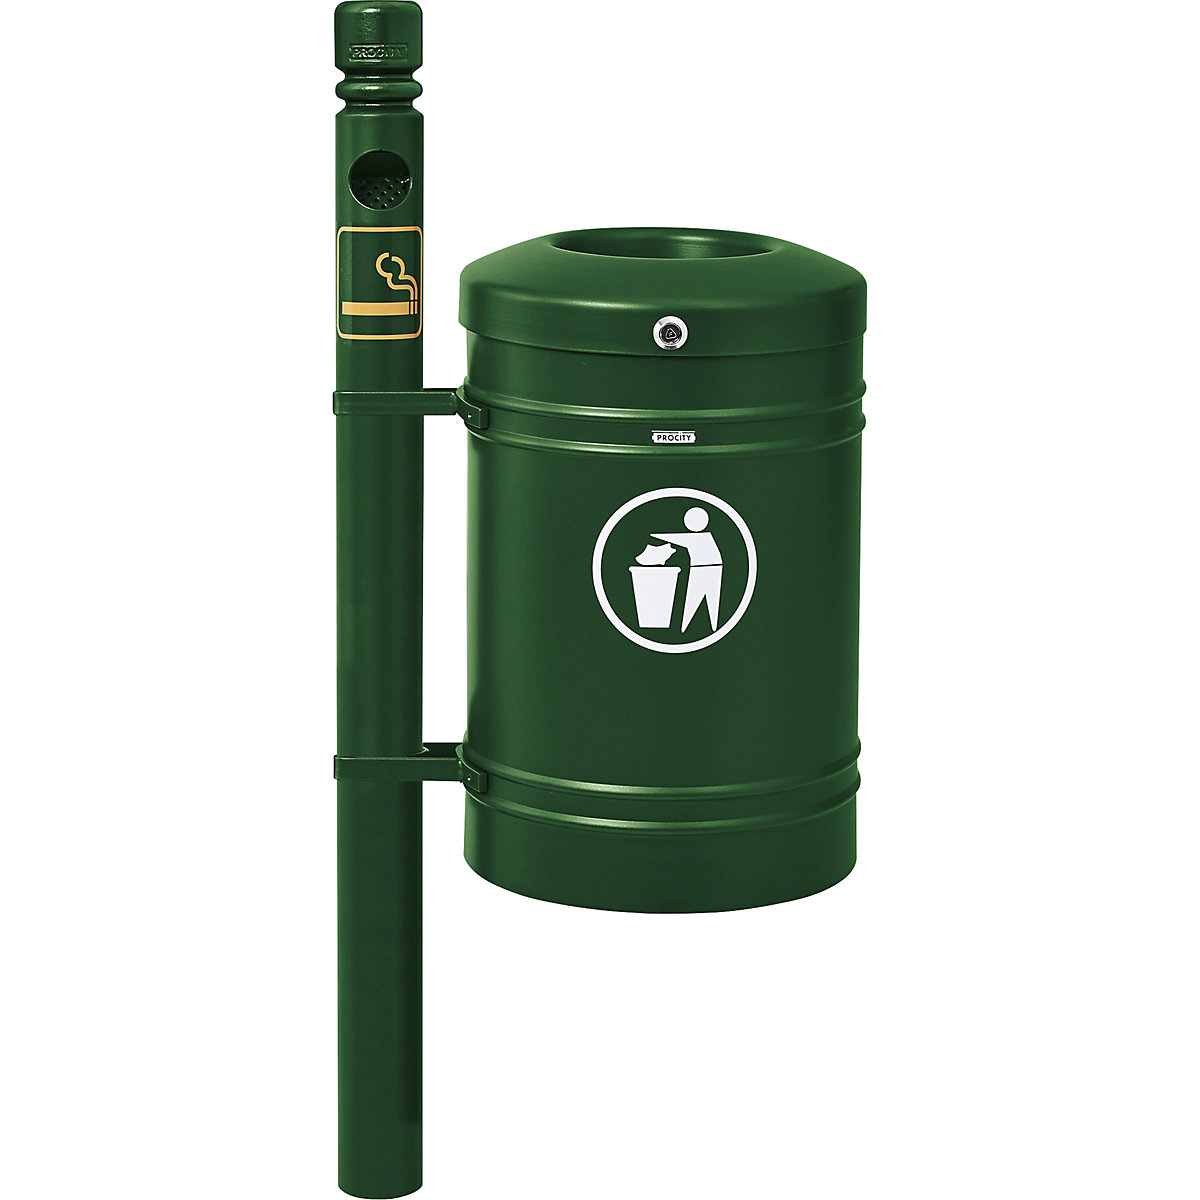 Vanjski spremnik za otpad GUSTAVIA – PROCITY, volumen 40 l, s pepeljarom, u zelenoj boji-2